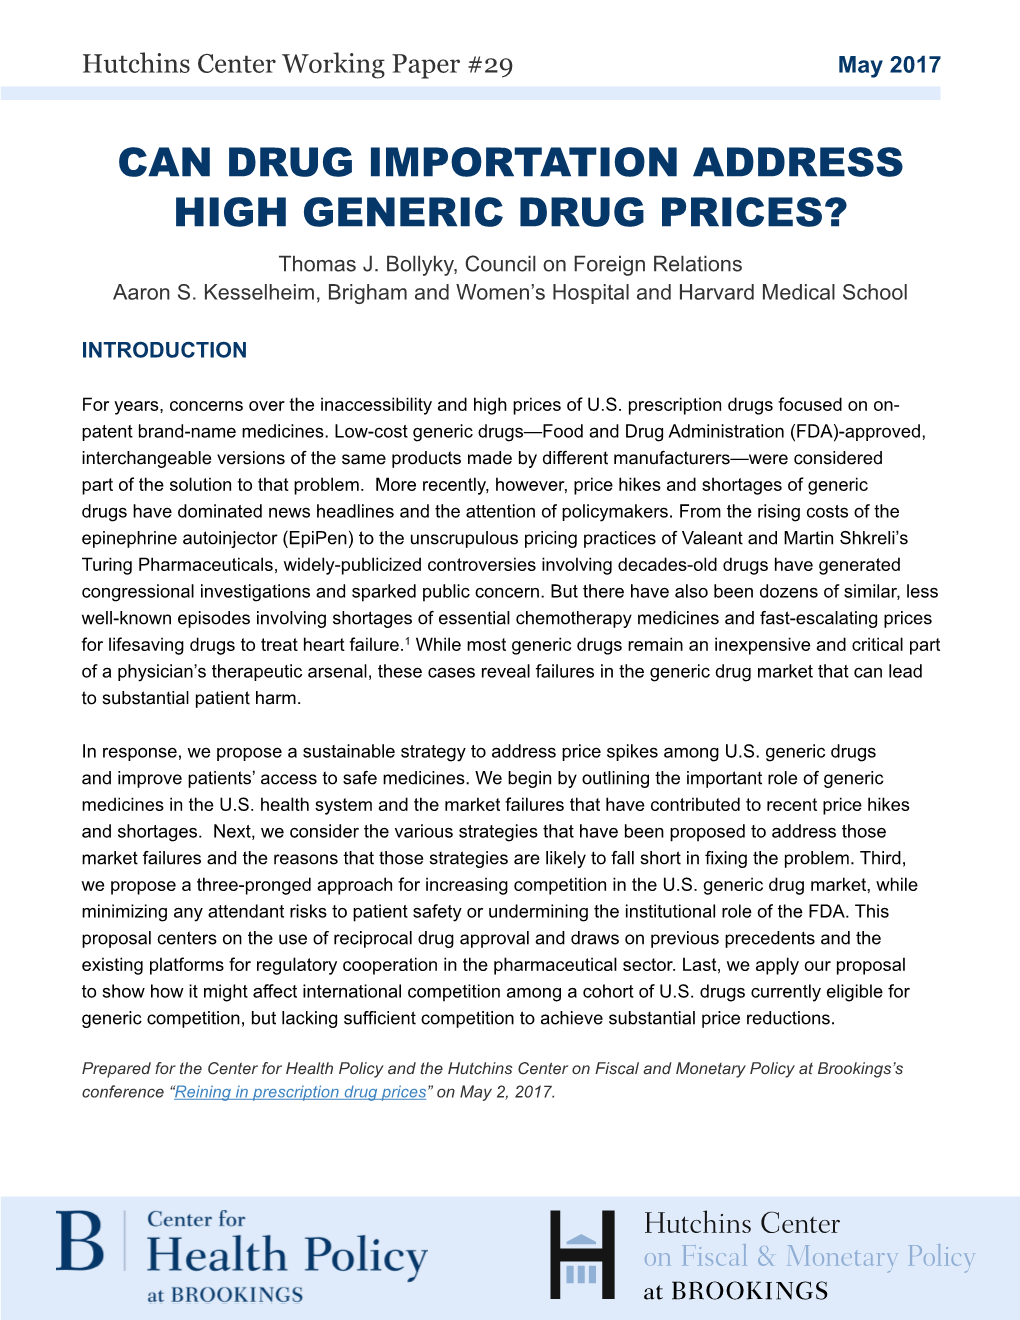 Can Drug Importation Address High Generic Drug Prices?